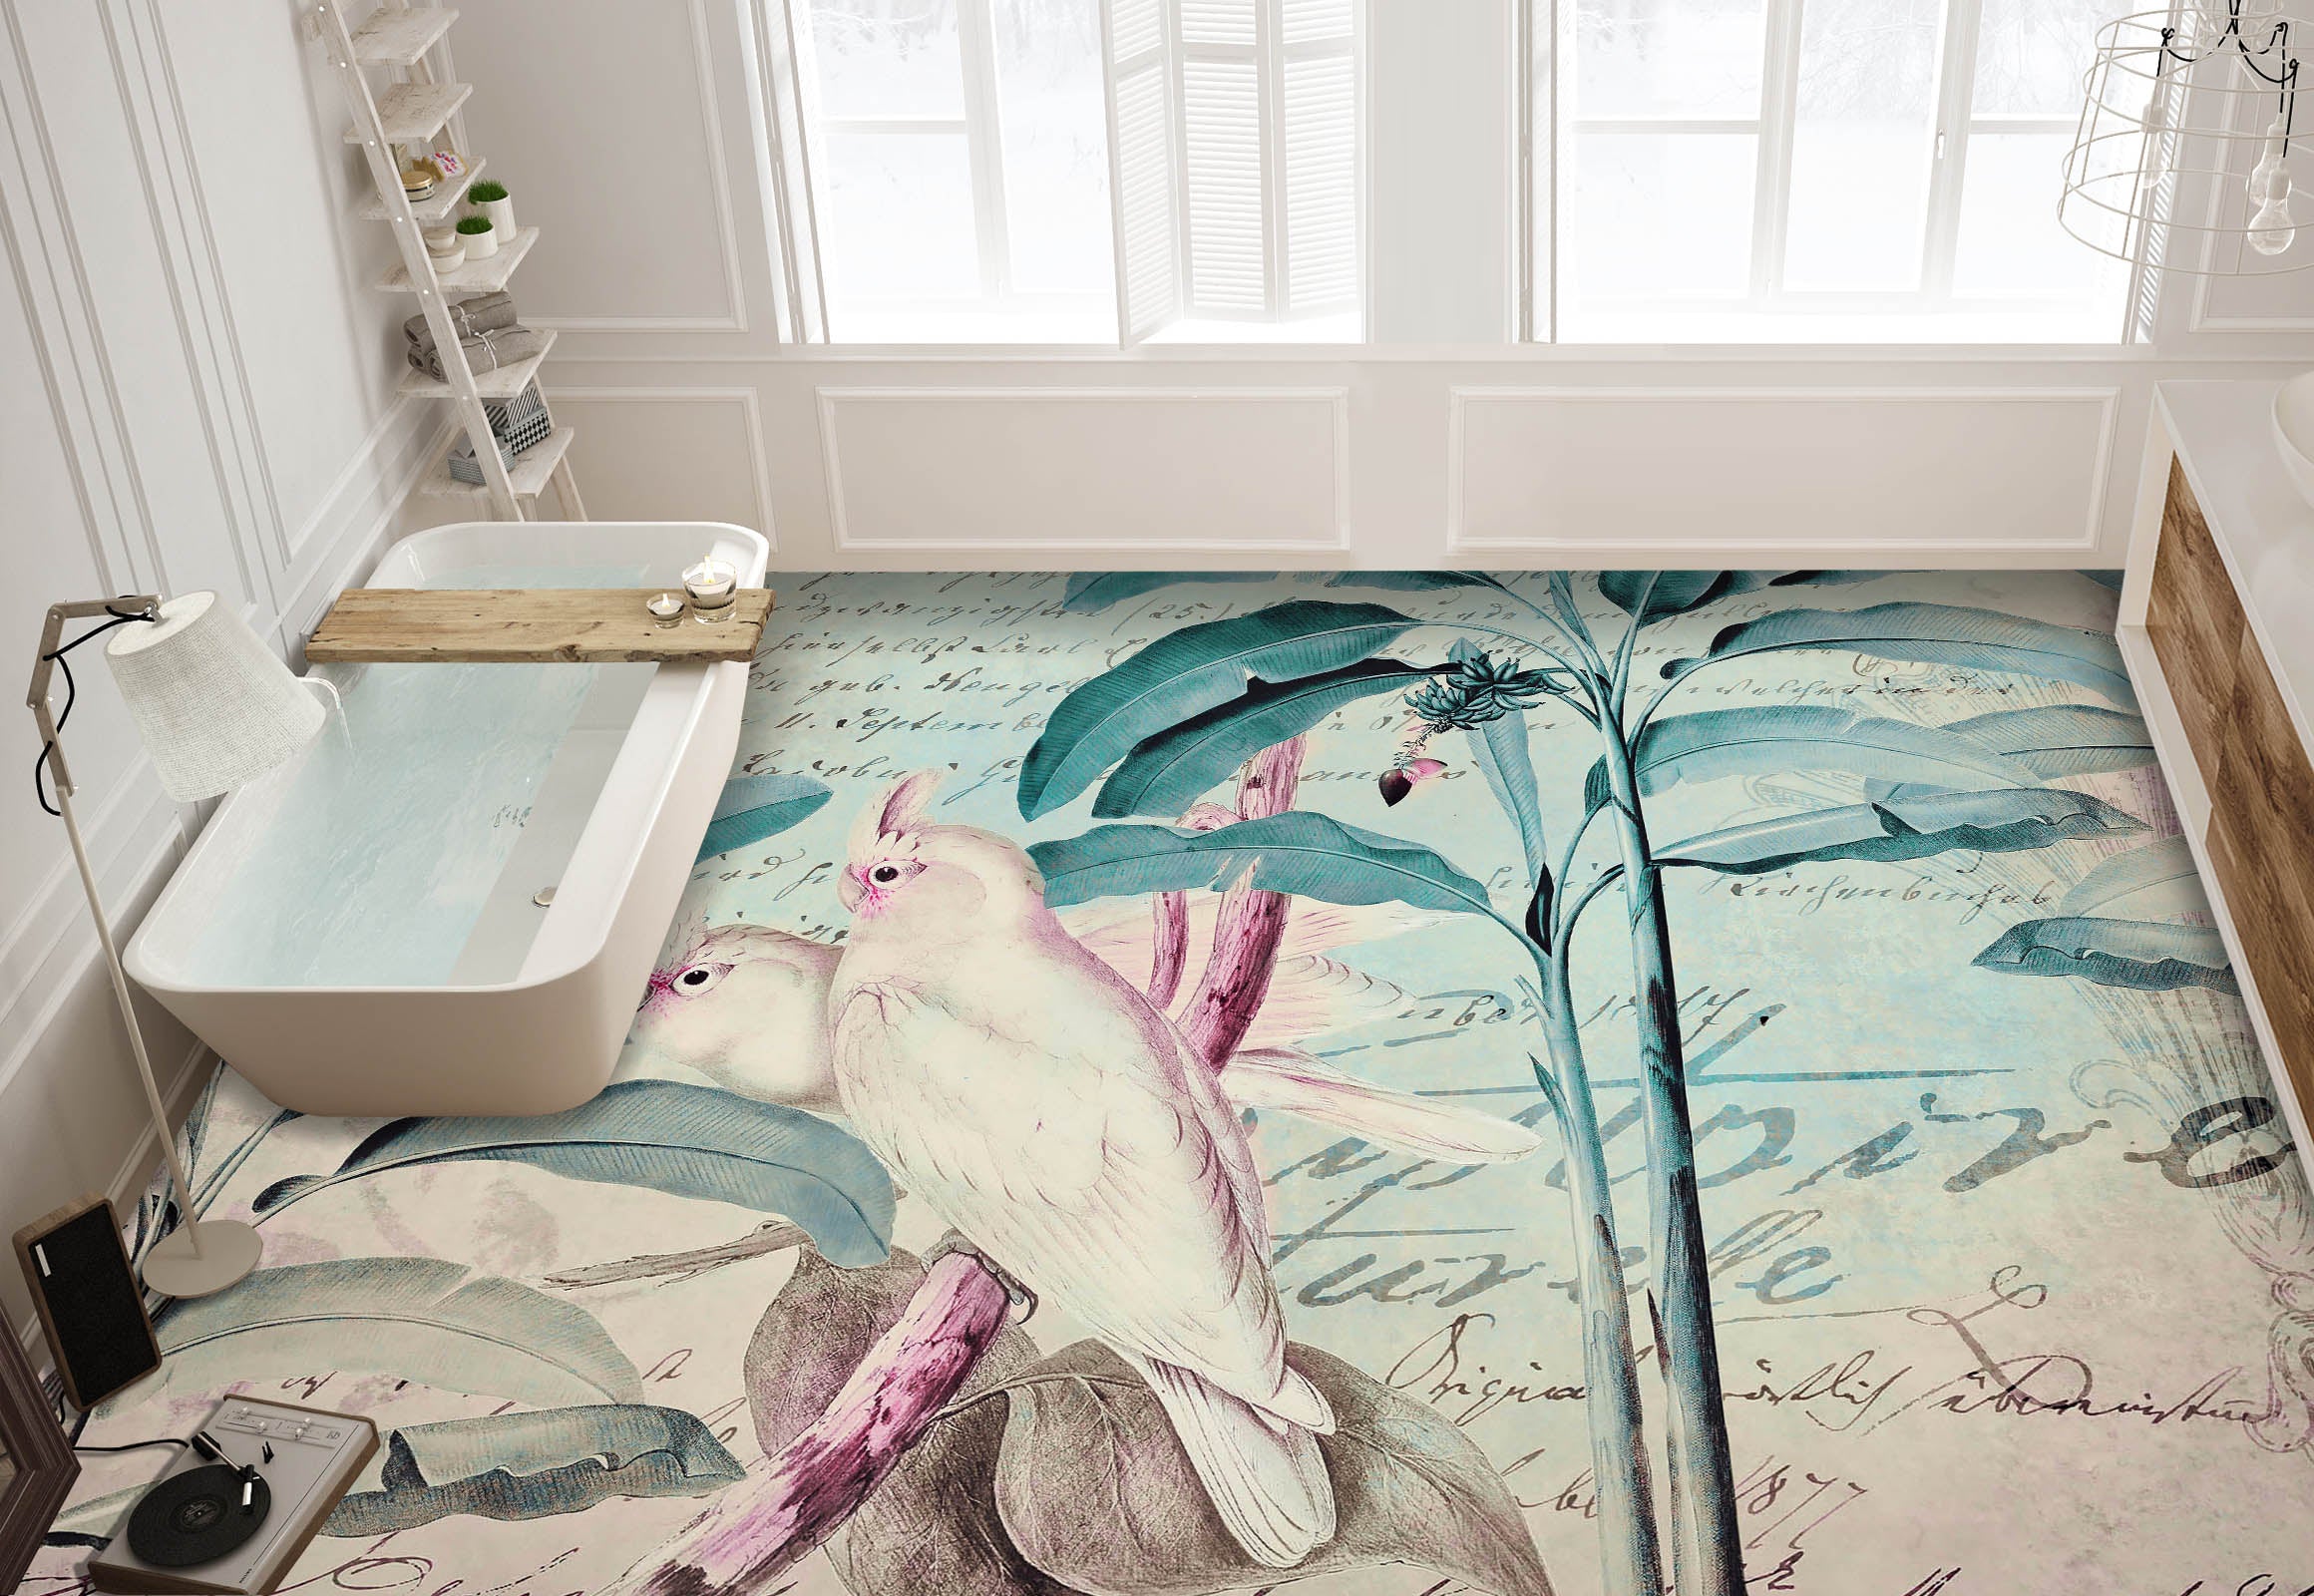 3D Leaves White Parrot 104162 Andrea Haase Floor Mural